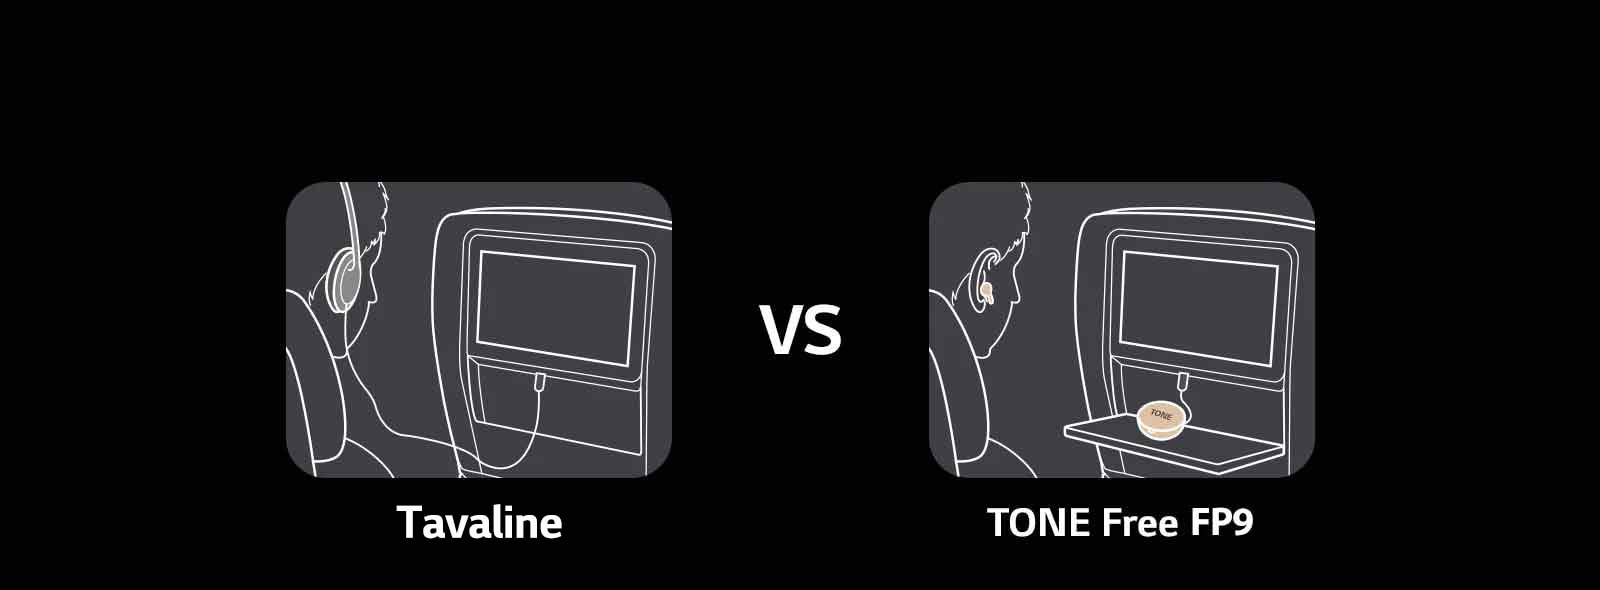 Selles stseenis tutvustatakse tavaliste ja TONE Free kõrvaklappide funktsioone, võrreldes lennu ajal meelelahutuse kasutamist. Tavapärase variandi korral kasutatakse juhtmega kõrvaklappe, TONE Free puhul aga ühendatakse vaid karp aux-juhtmega lennukiistme ekraaniga ning lennukis pakutavat sisu saab nautida juhtmevabade nööpkõrvaklappidega.